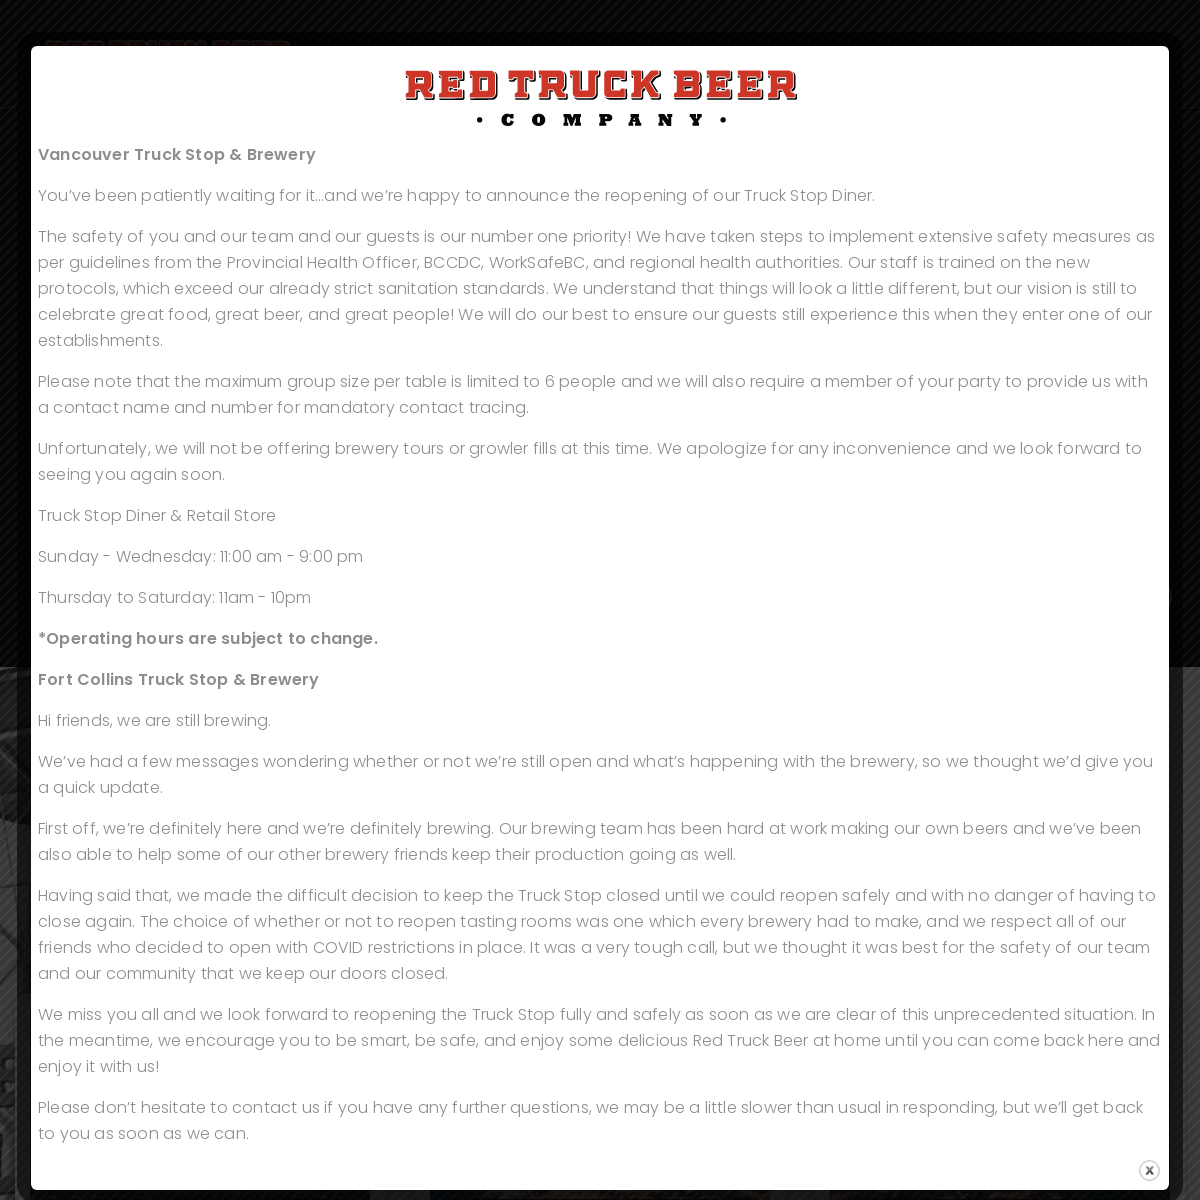 A complete backup of redtruckbeer.com